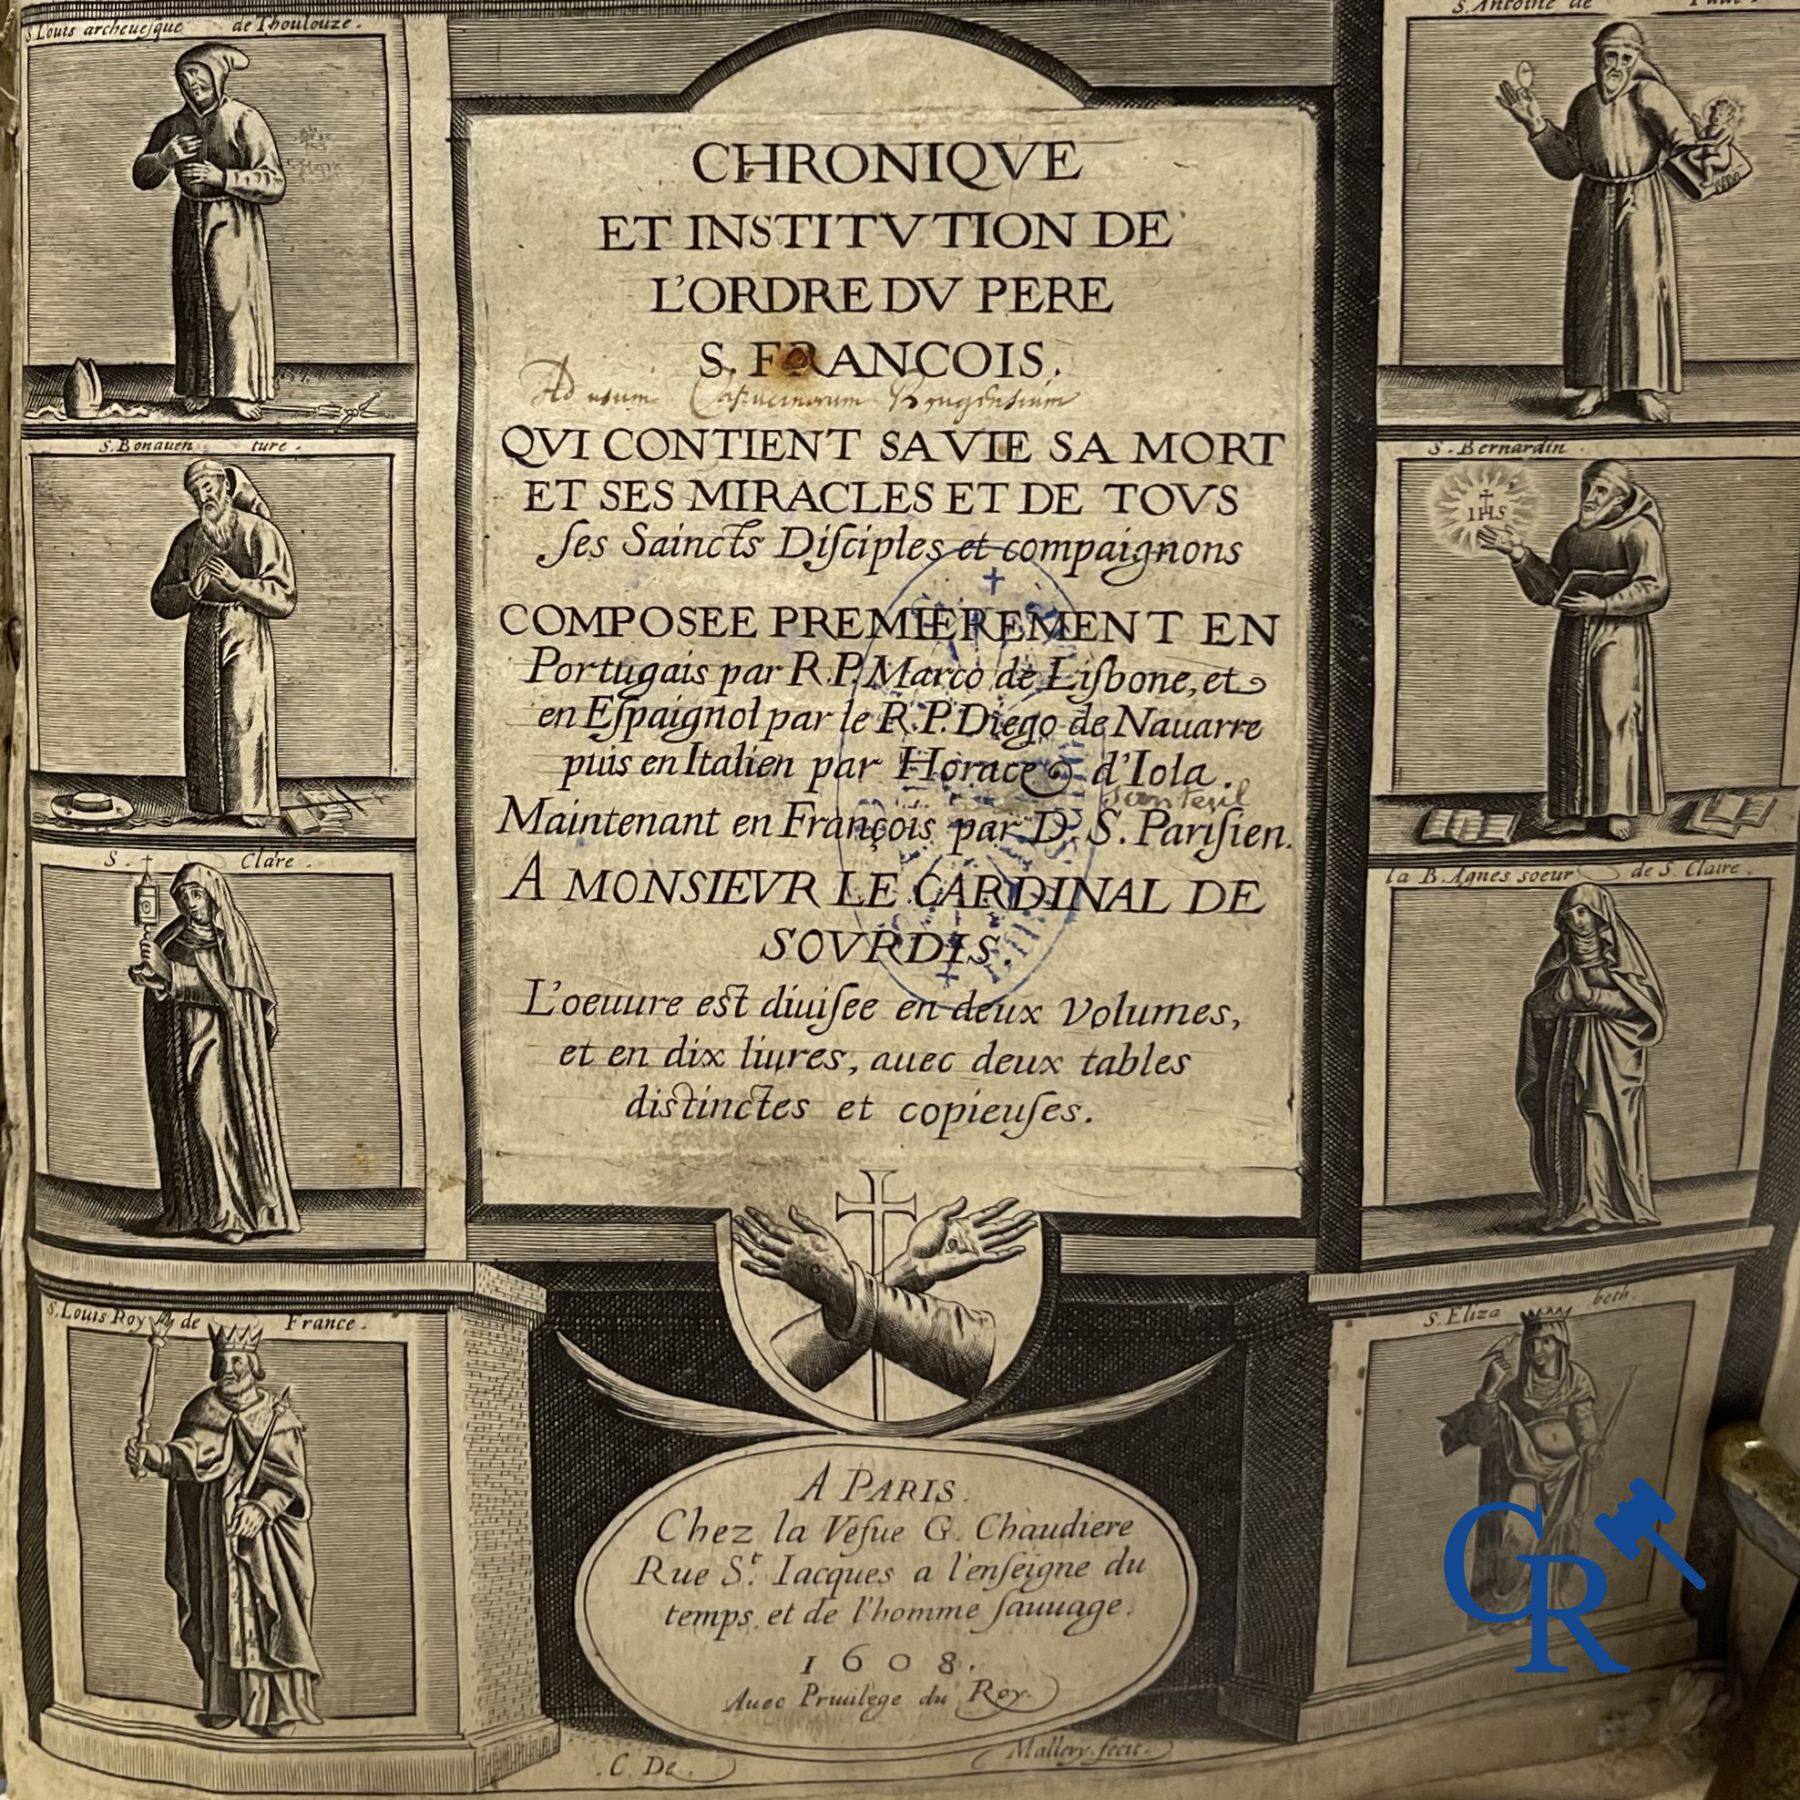 Early Printed Books: Marcos de Lisboa, Chronique et institution de l'ordre du Père S. François, Pari